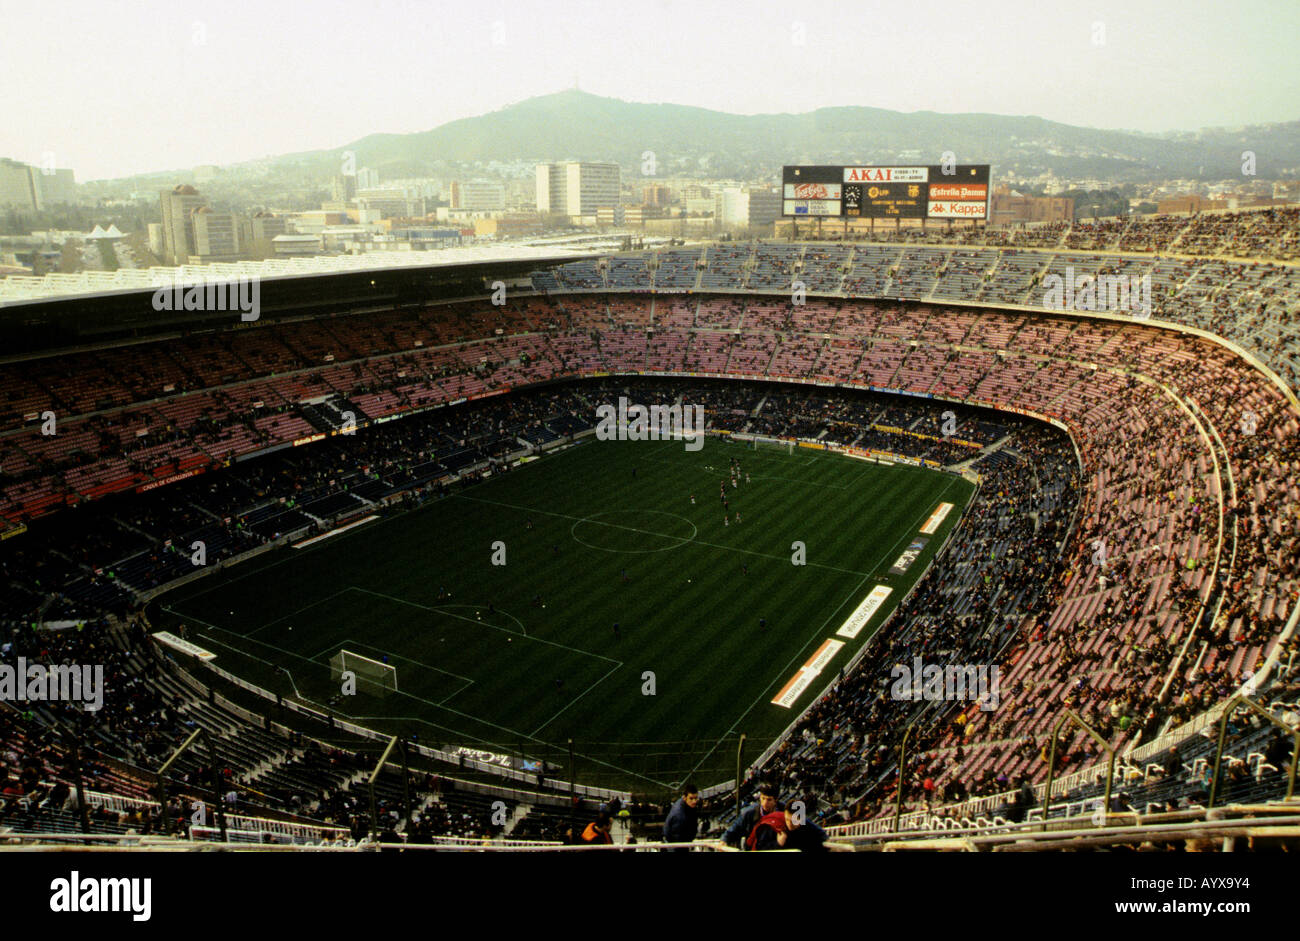 Avec ses 100 000 Camp Nou est la capacité d'accueil pour le FC Barcelone et le plus grand stade de football en Europe. Banque D'Images